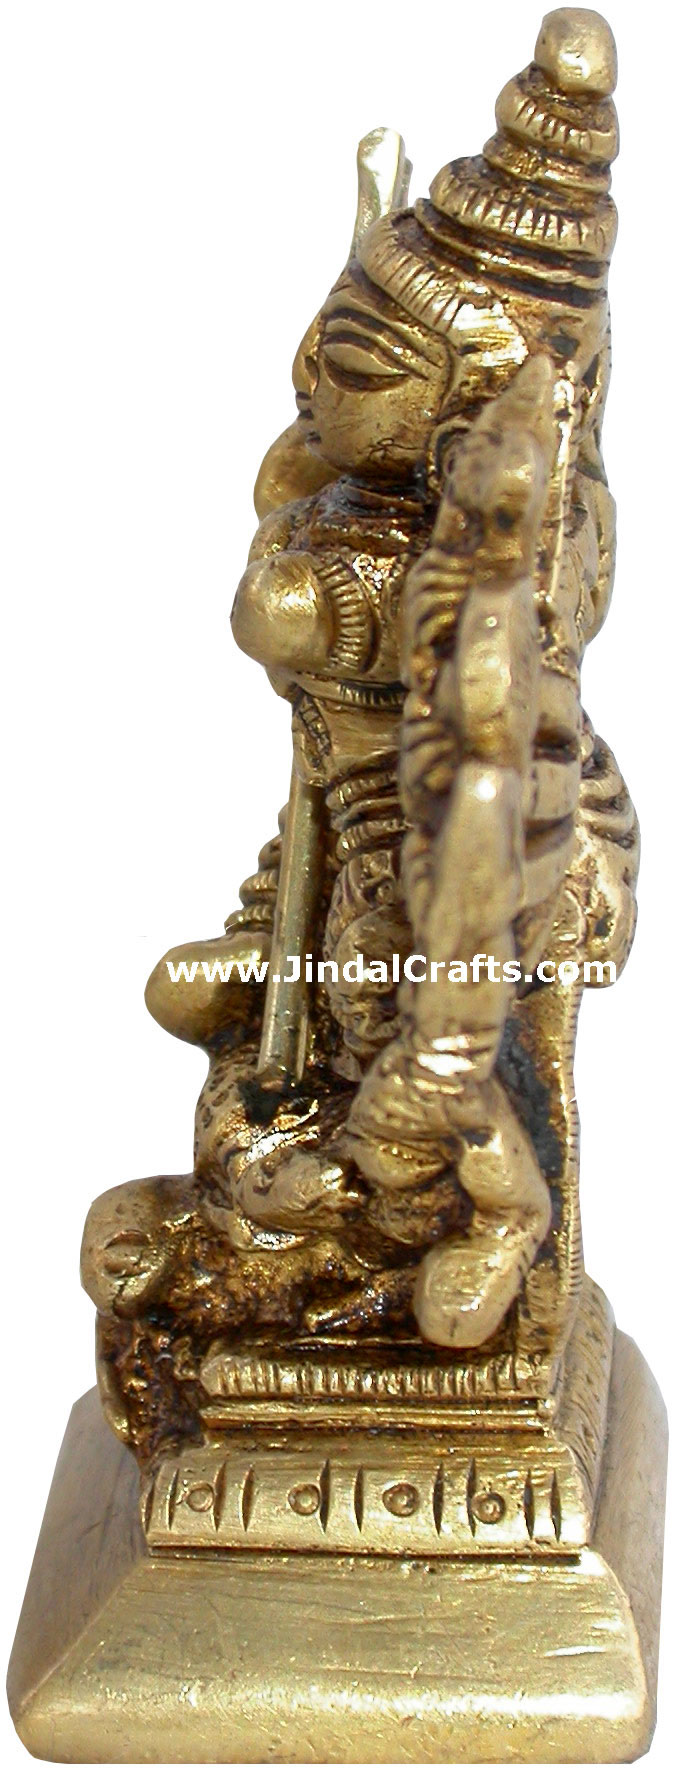 Maa Durga Kali Kalka Bengali Goddess Sculpture India